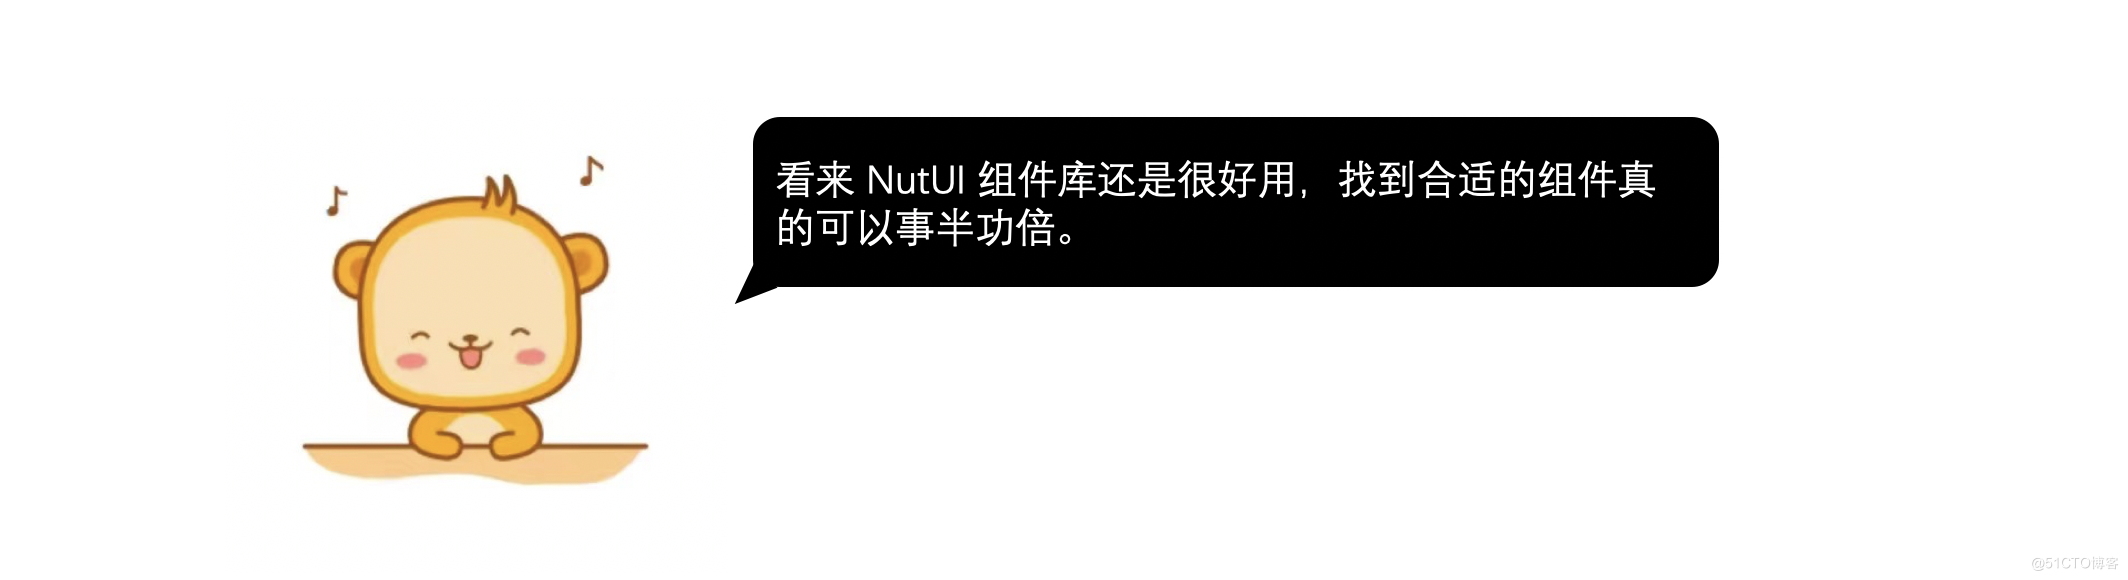 金先生的 NutUI3 初体验_NutUI_08